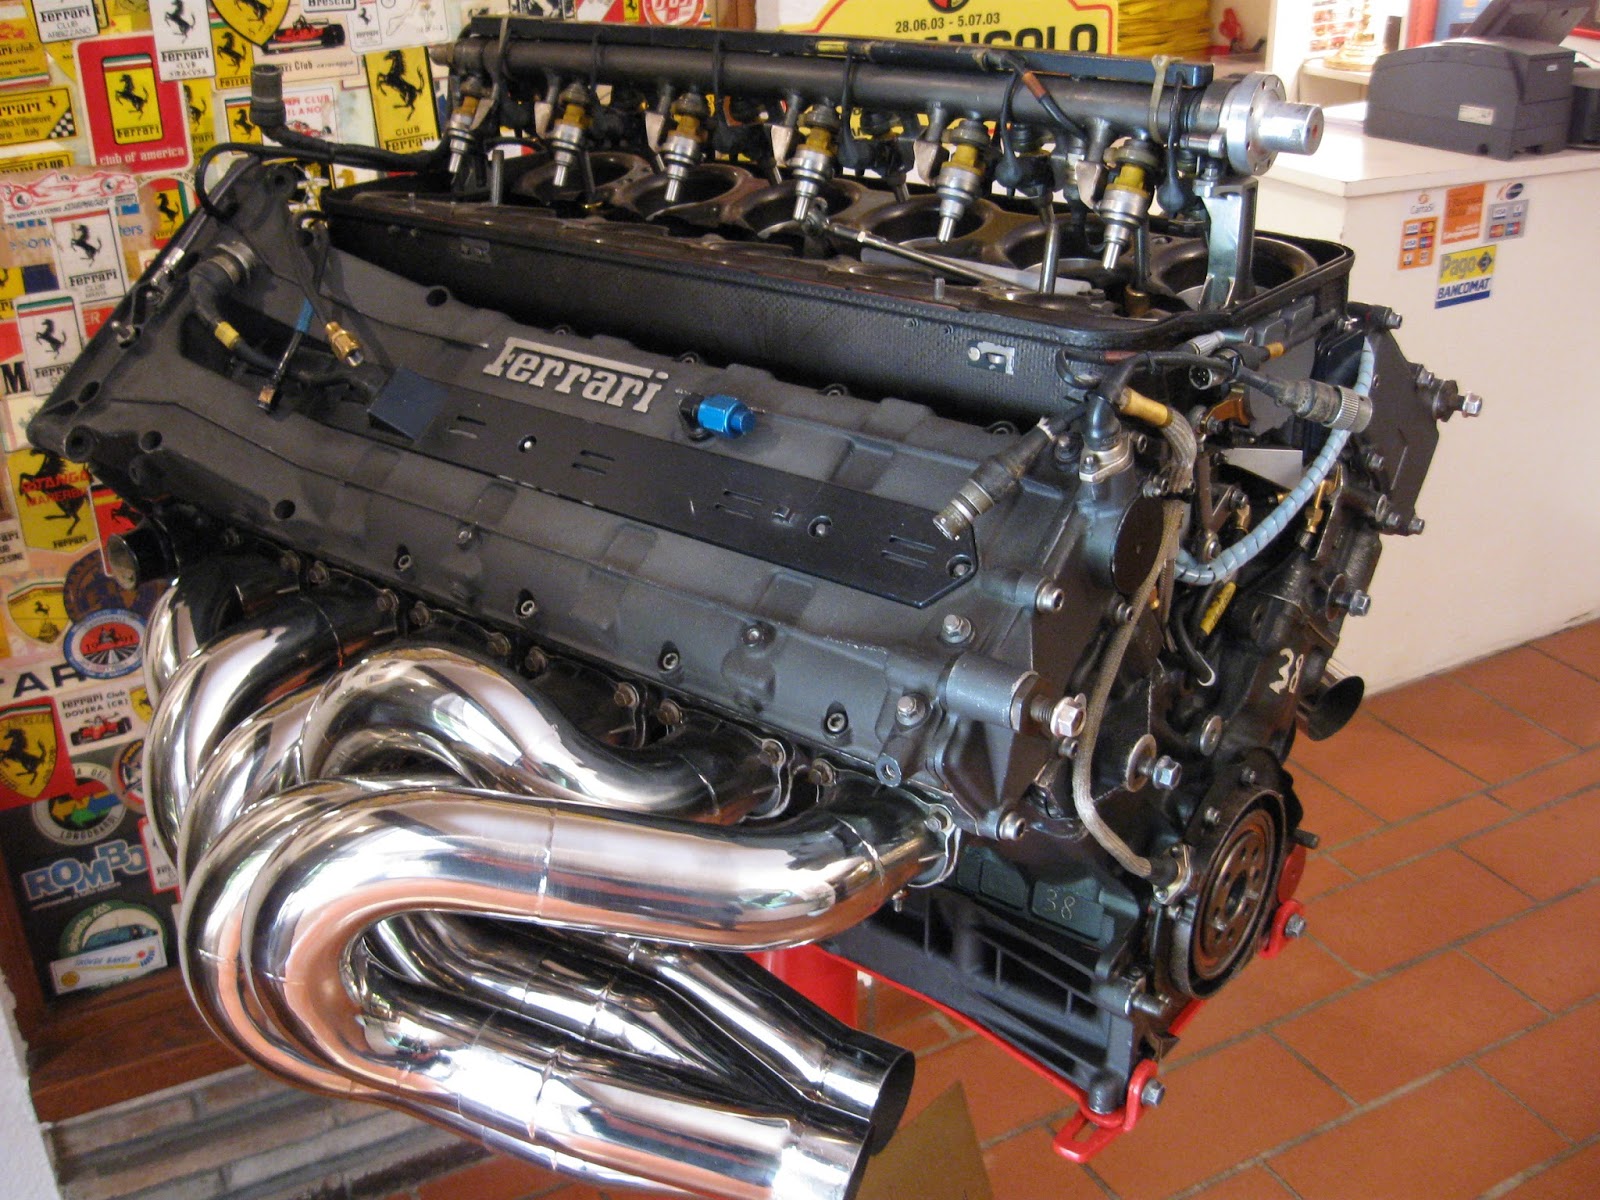 Picture of Ferrari engine